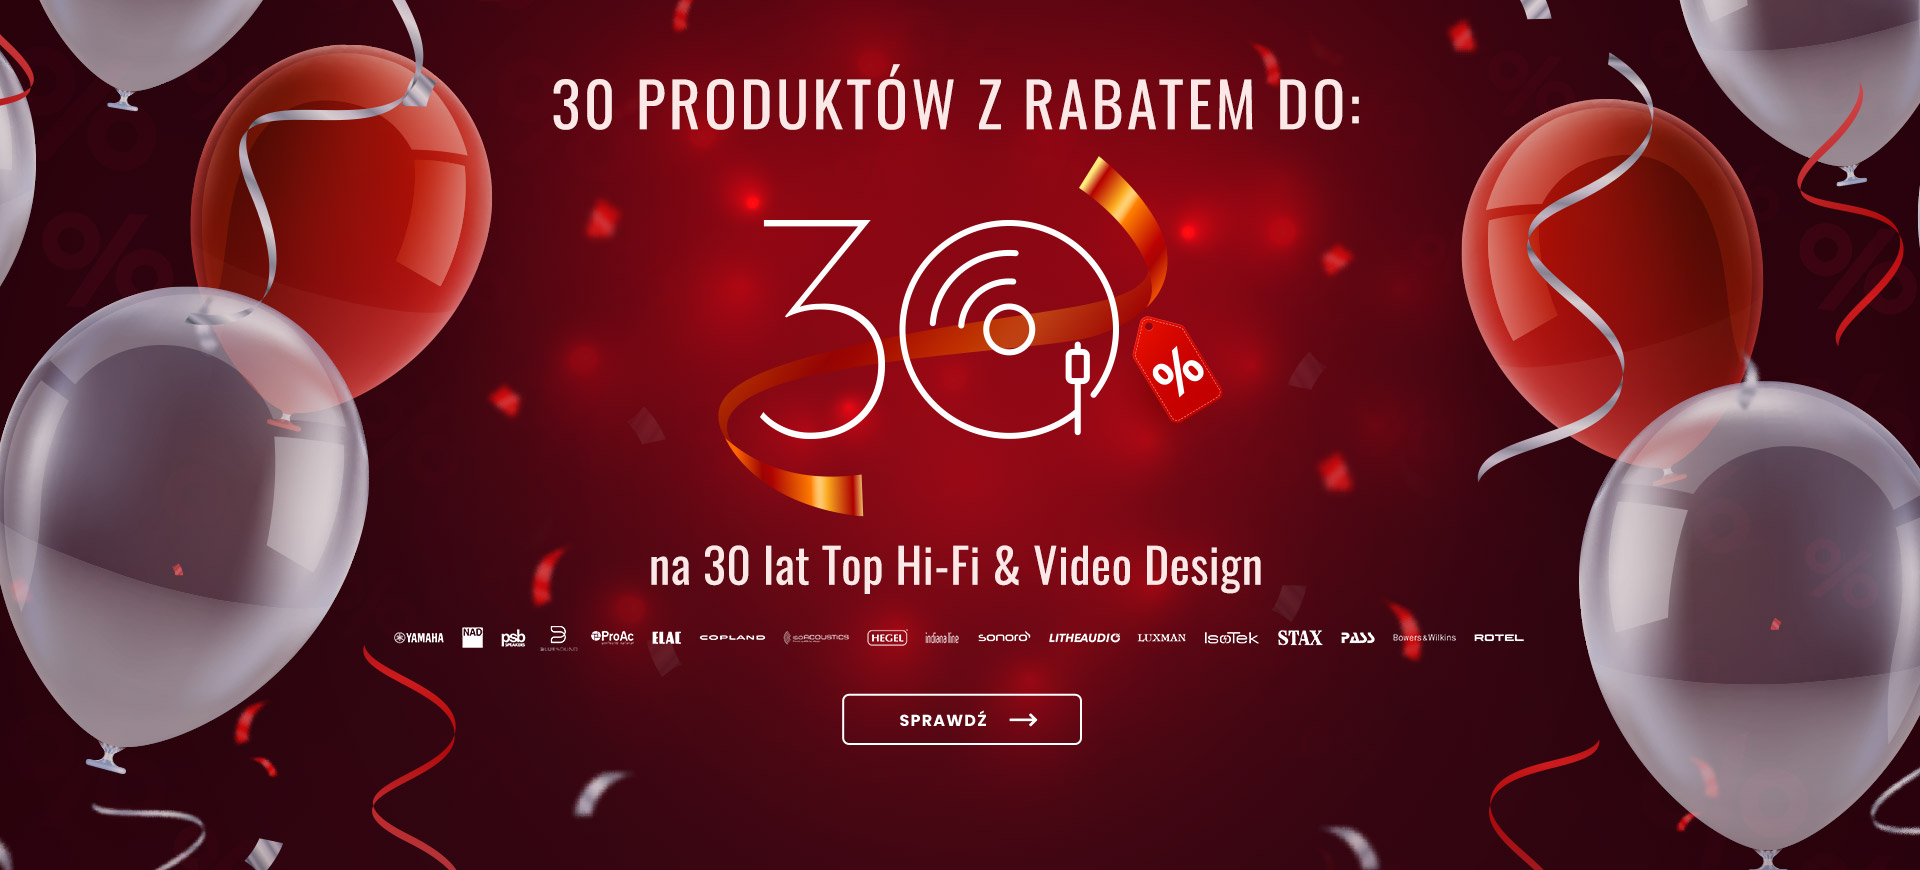 30% rabatu na 30-lecie Top Hi-Fi & Video Design